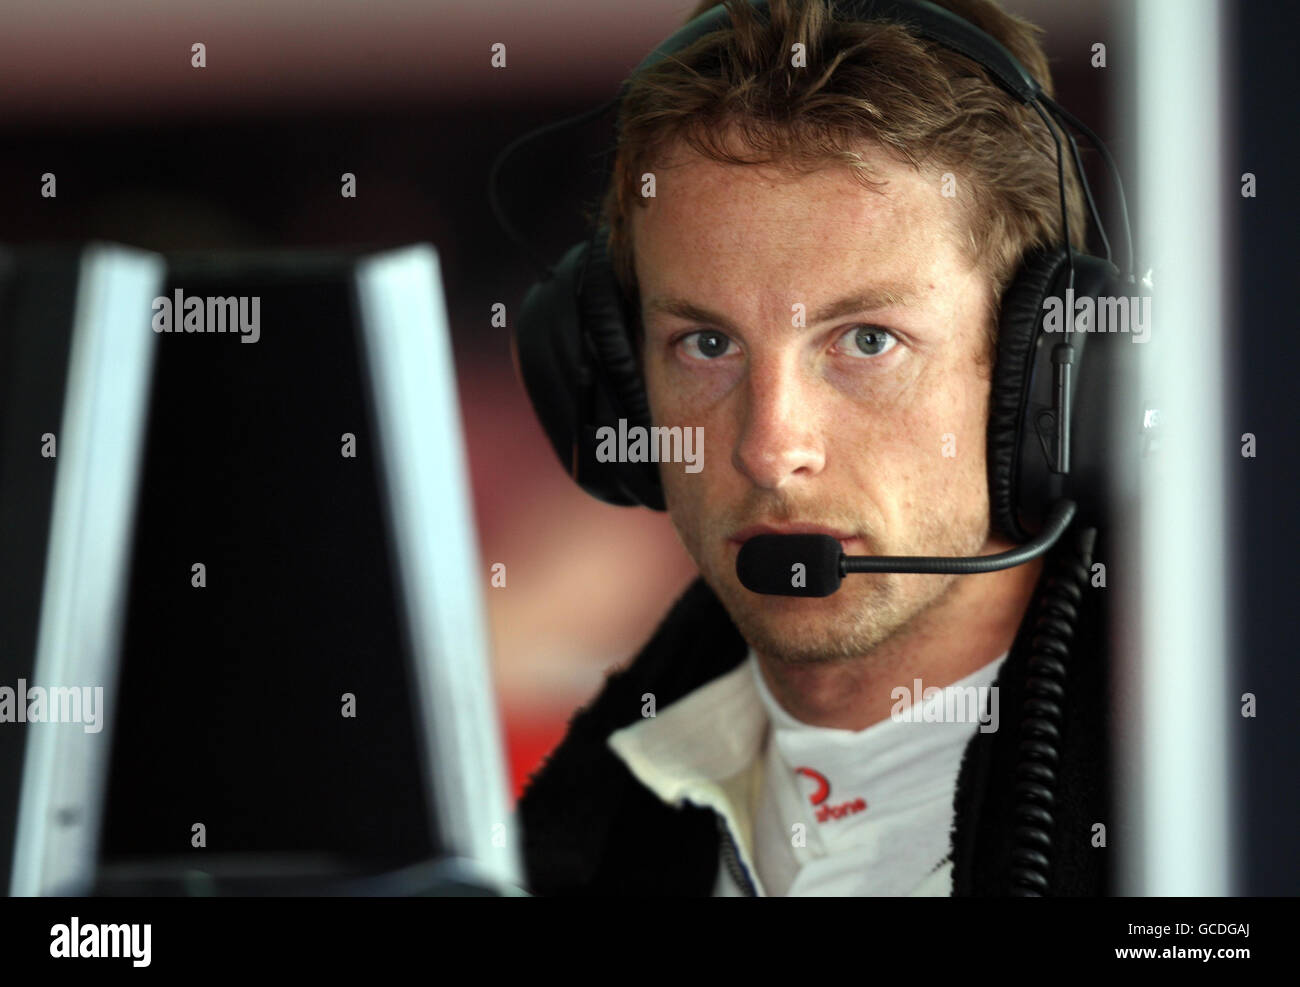 Courses automobiles - Championnat du monde de Formule 1 - Grand Prix de Bahreïn - session de pratique - circuit international de Bahreïn.Jenson Button, pilote McLaren, dans le garage pendant la séance d'essais au circuit international de Bahreïn à Sakhir, Bahreïn. Banque D'Images